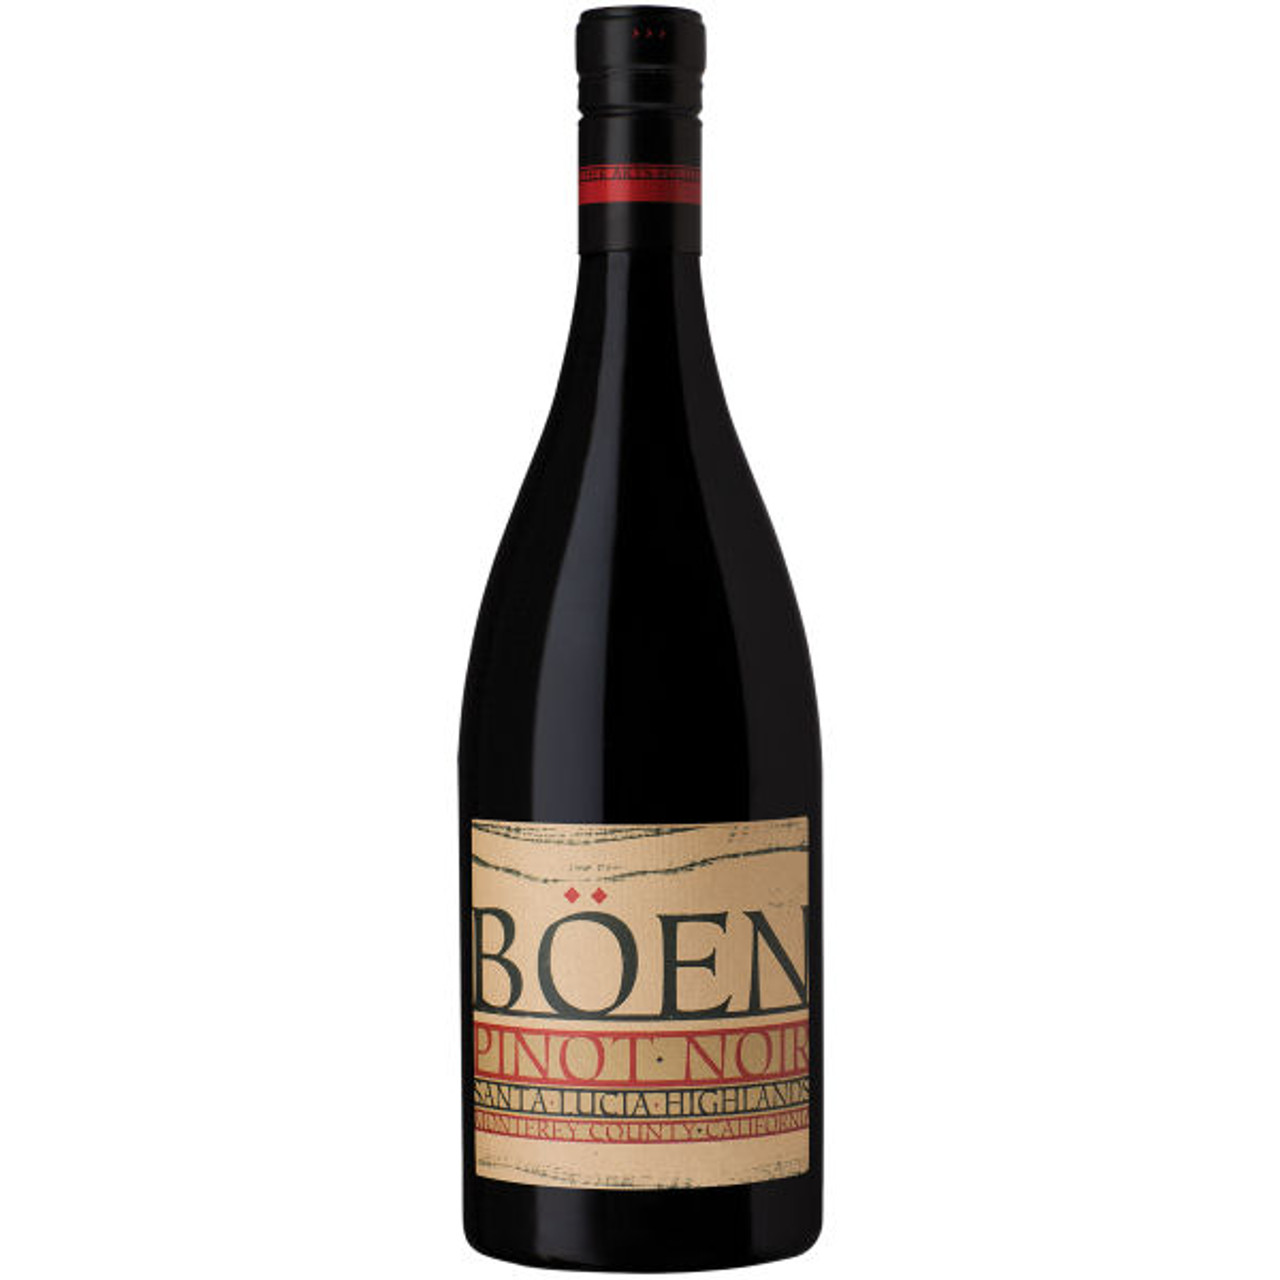 Boen Santa Lucia Highlands Pinot Noir